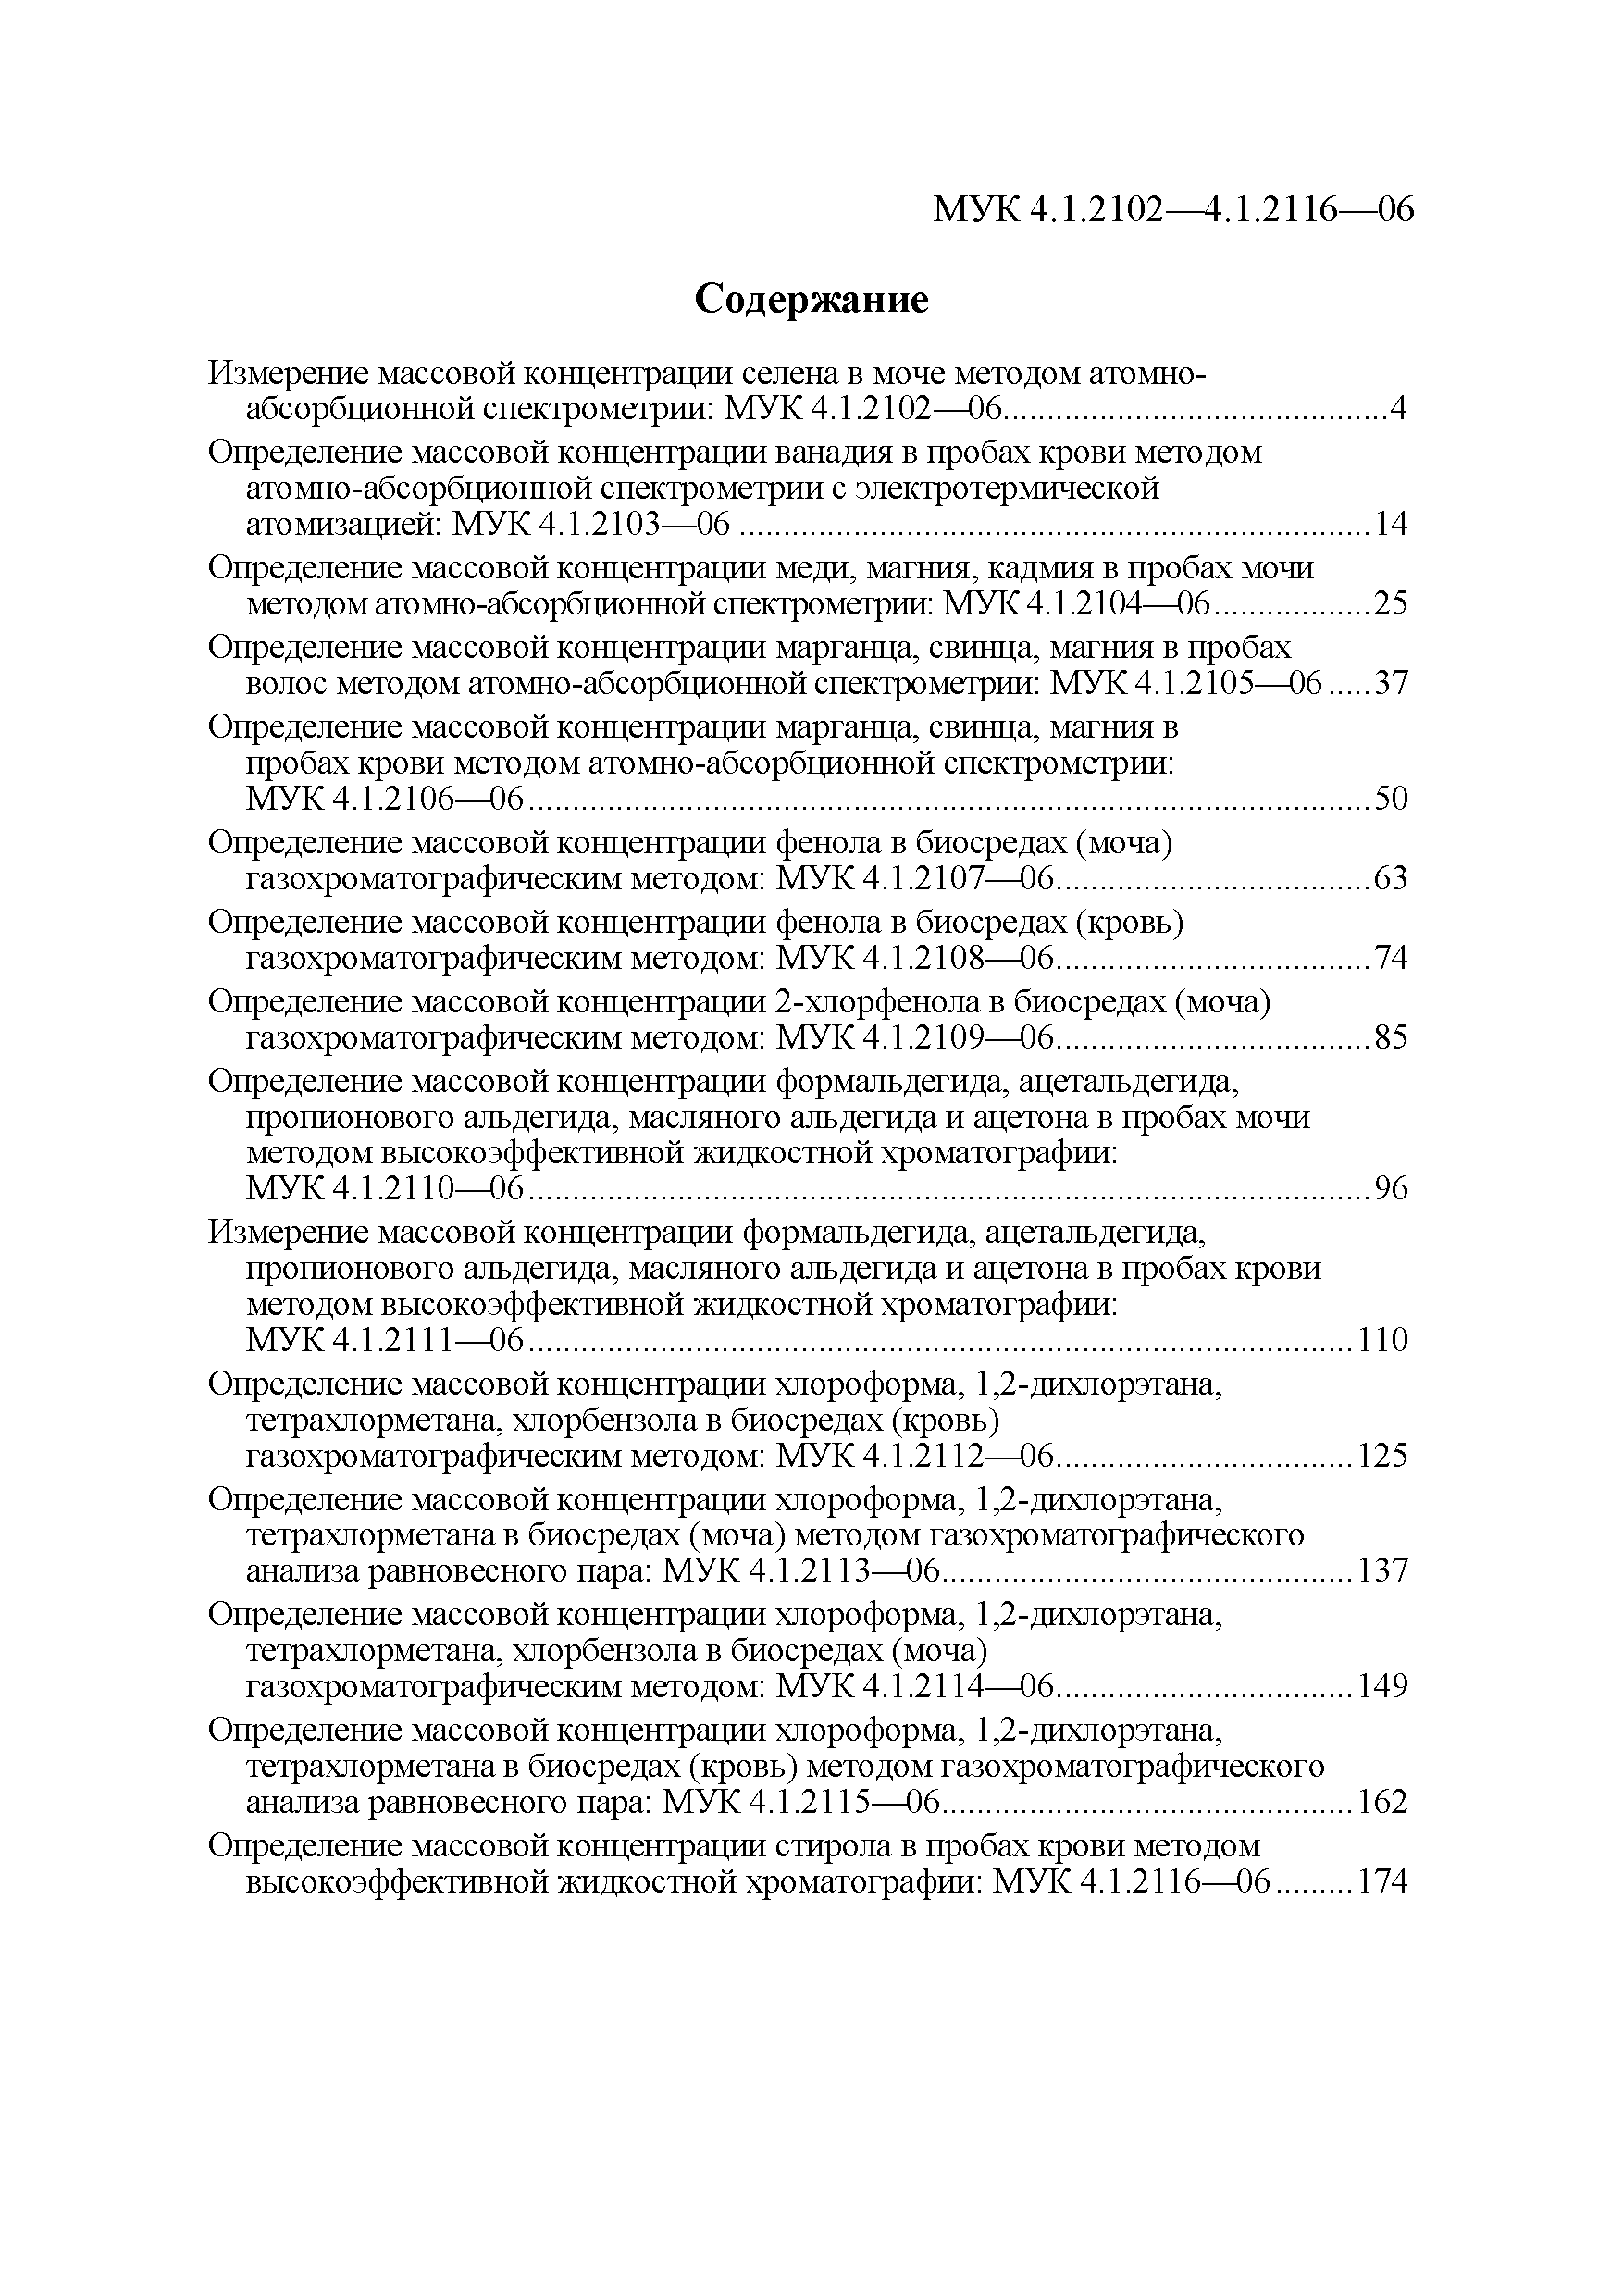 МУК 4.1.2109-06